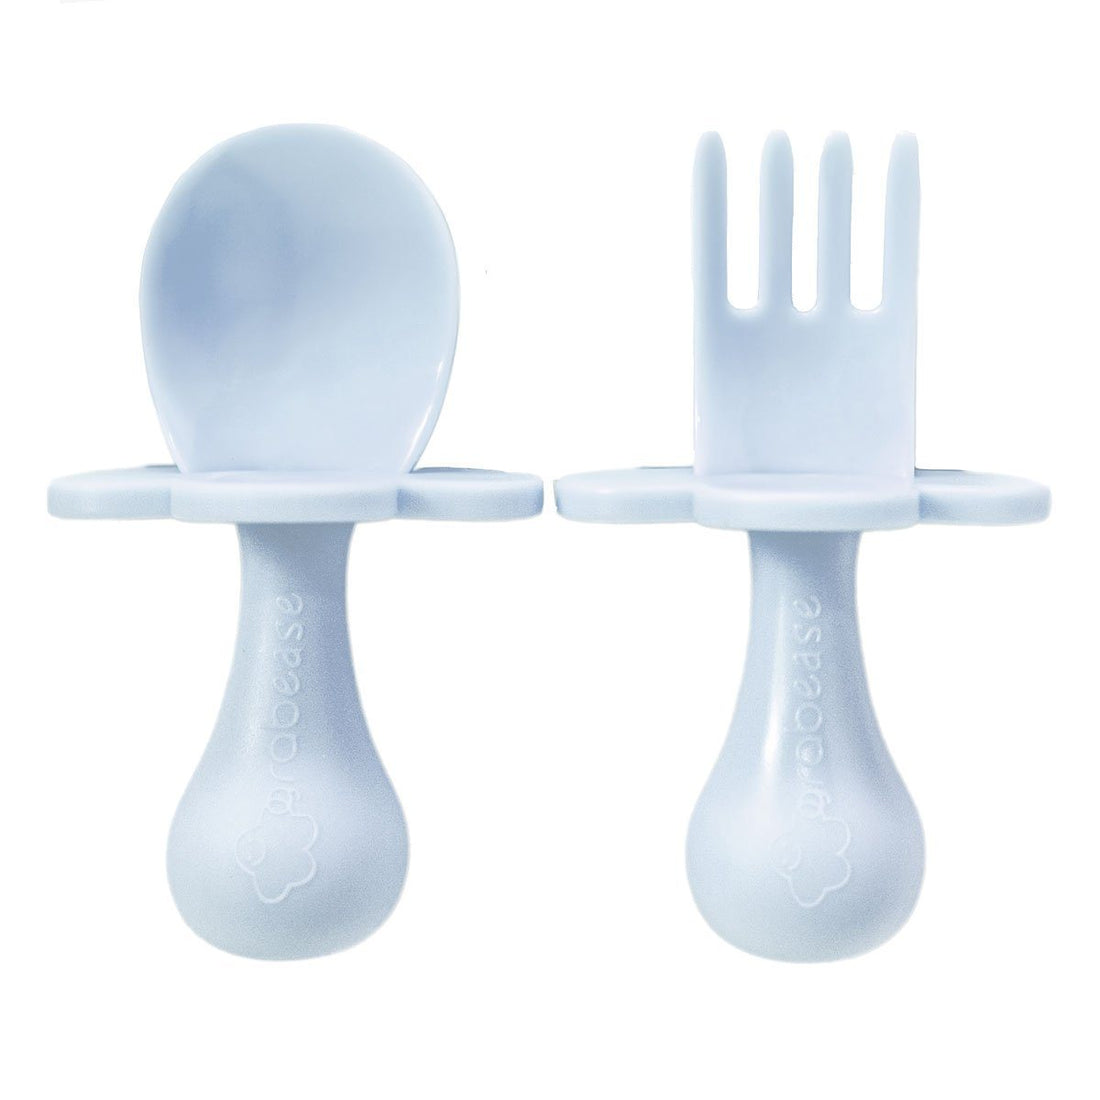 grabease-fork-and-spoon-set-light-blue-grab-ut-668350- (1)